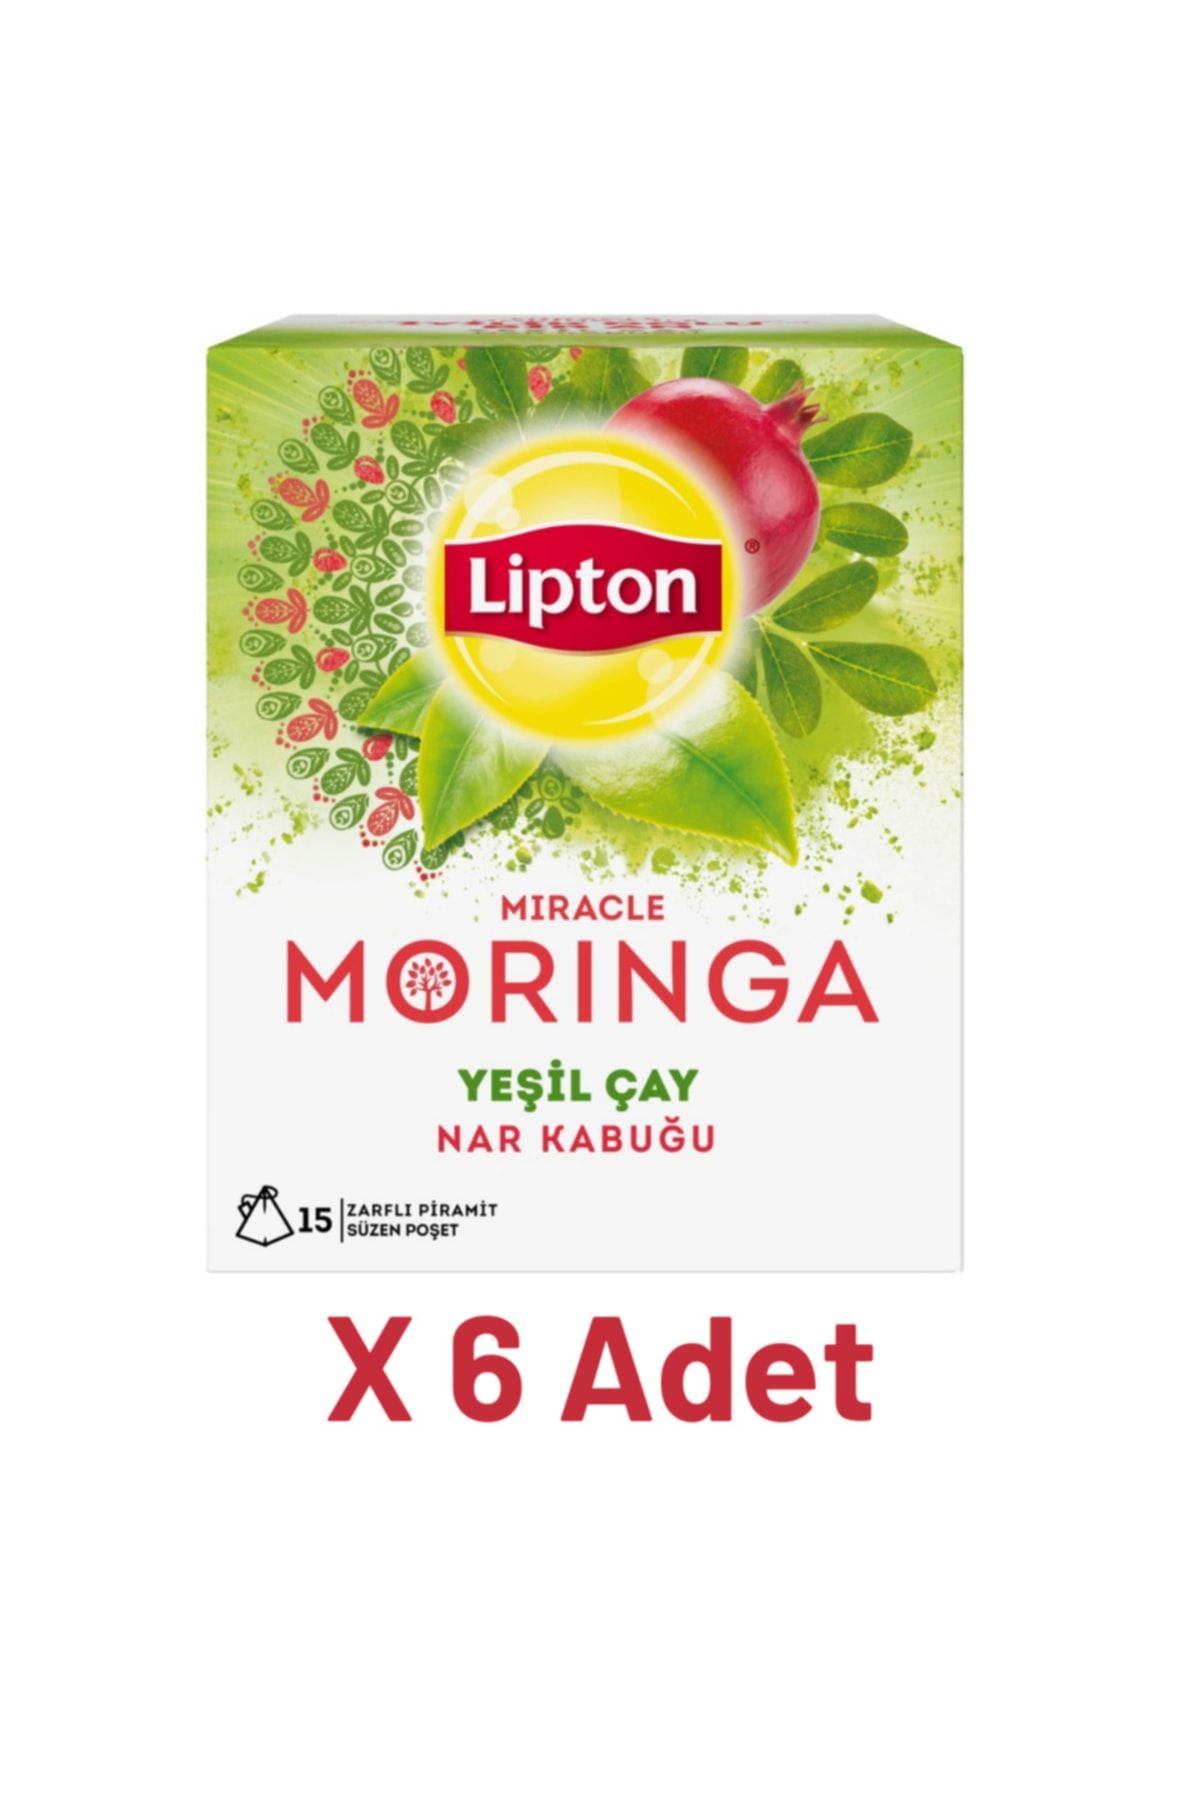 Lipton Moringa Bardak Poşet Bitki Ve Meyve Çayı 15li X 6 Adet